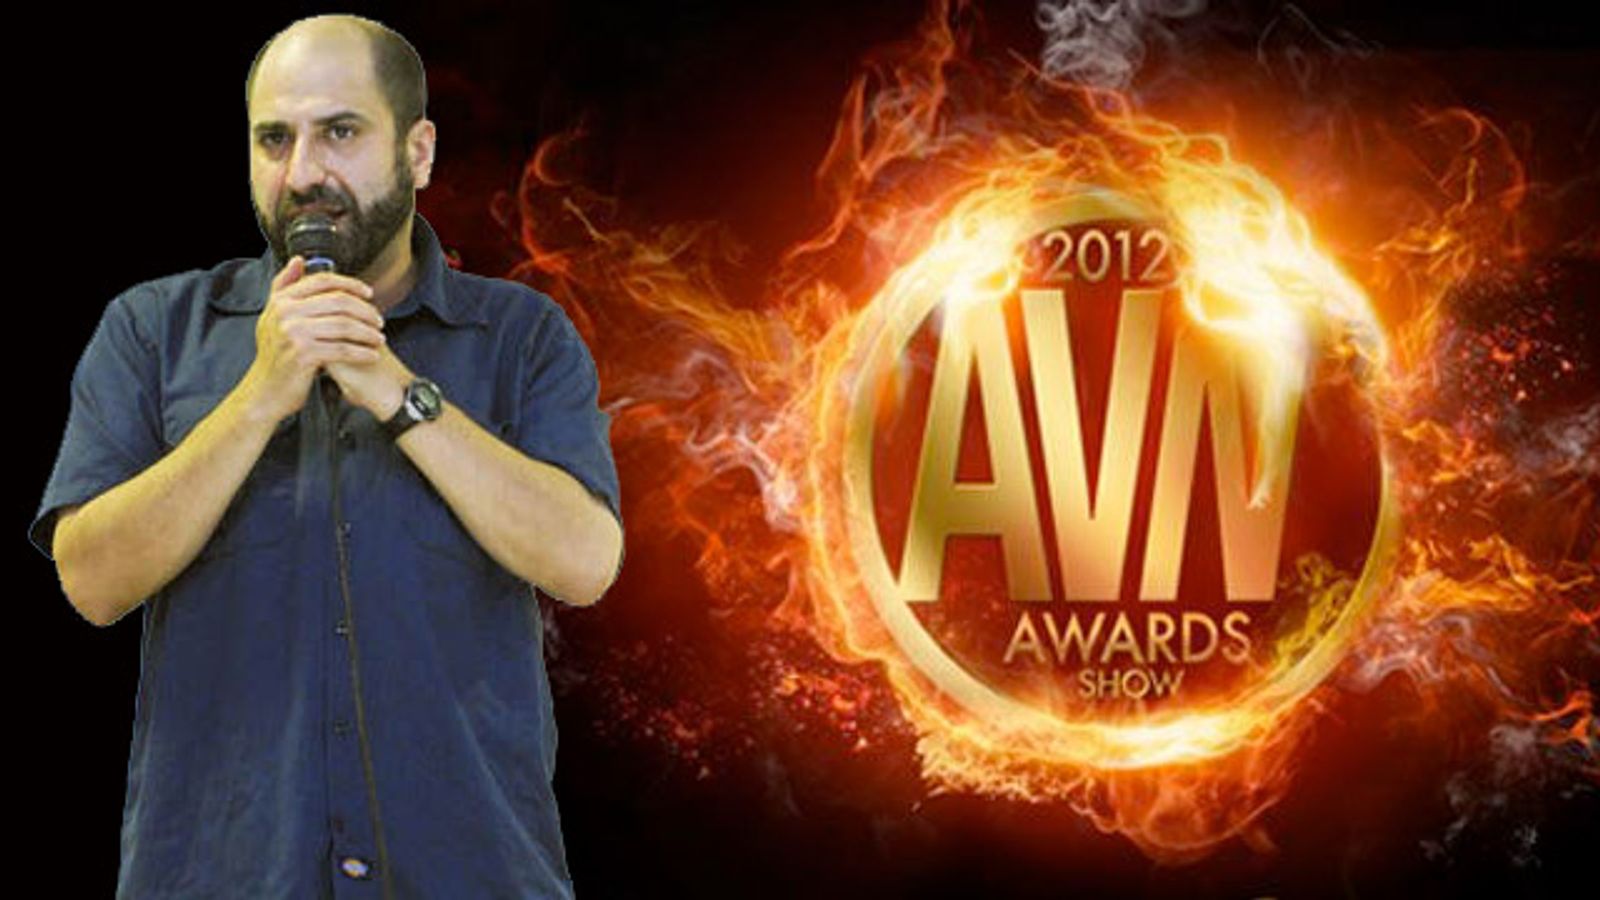 Dave Attell Returns to Host 2012 AVN Awards